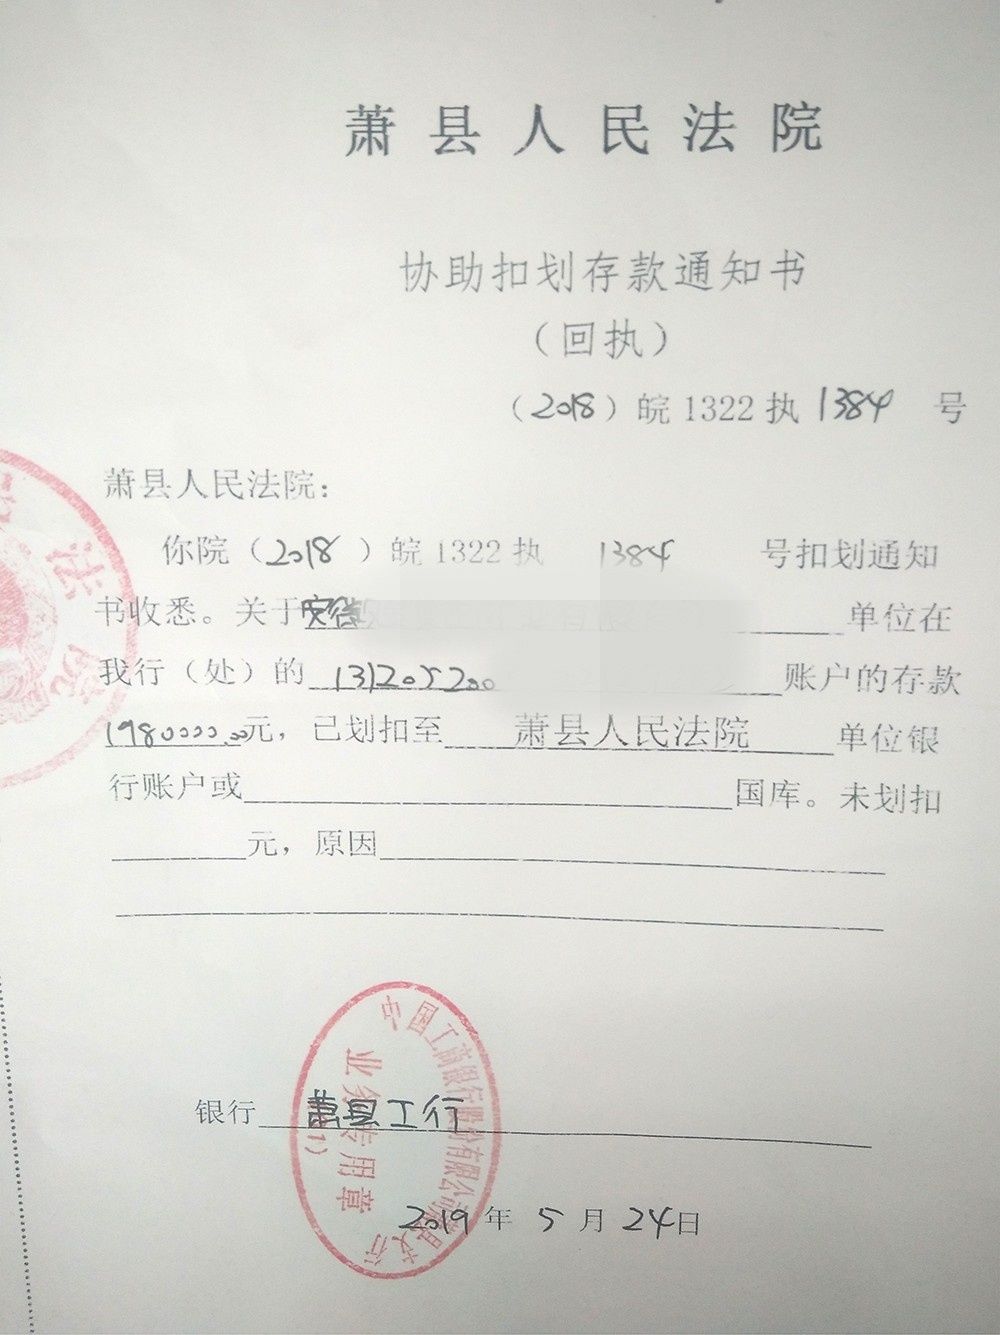 5月24日,萧县人民法院执行局欧阳法官通过公司协助扣划工程款和银行扣